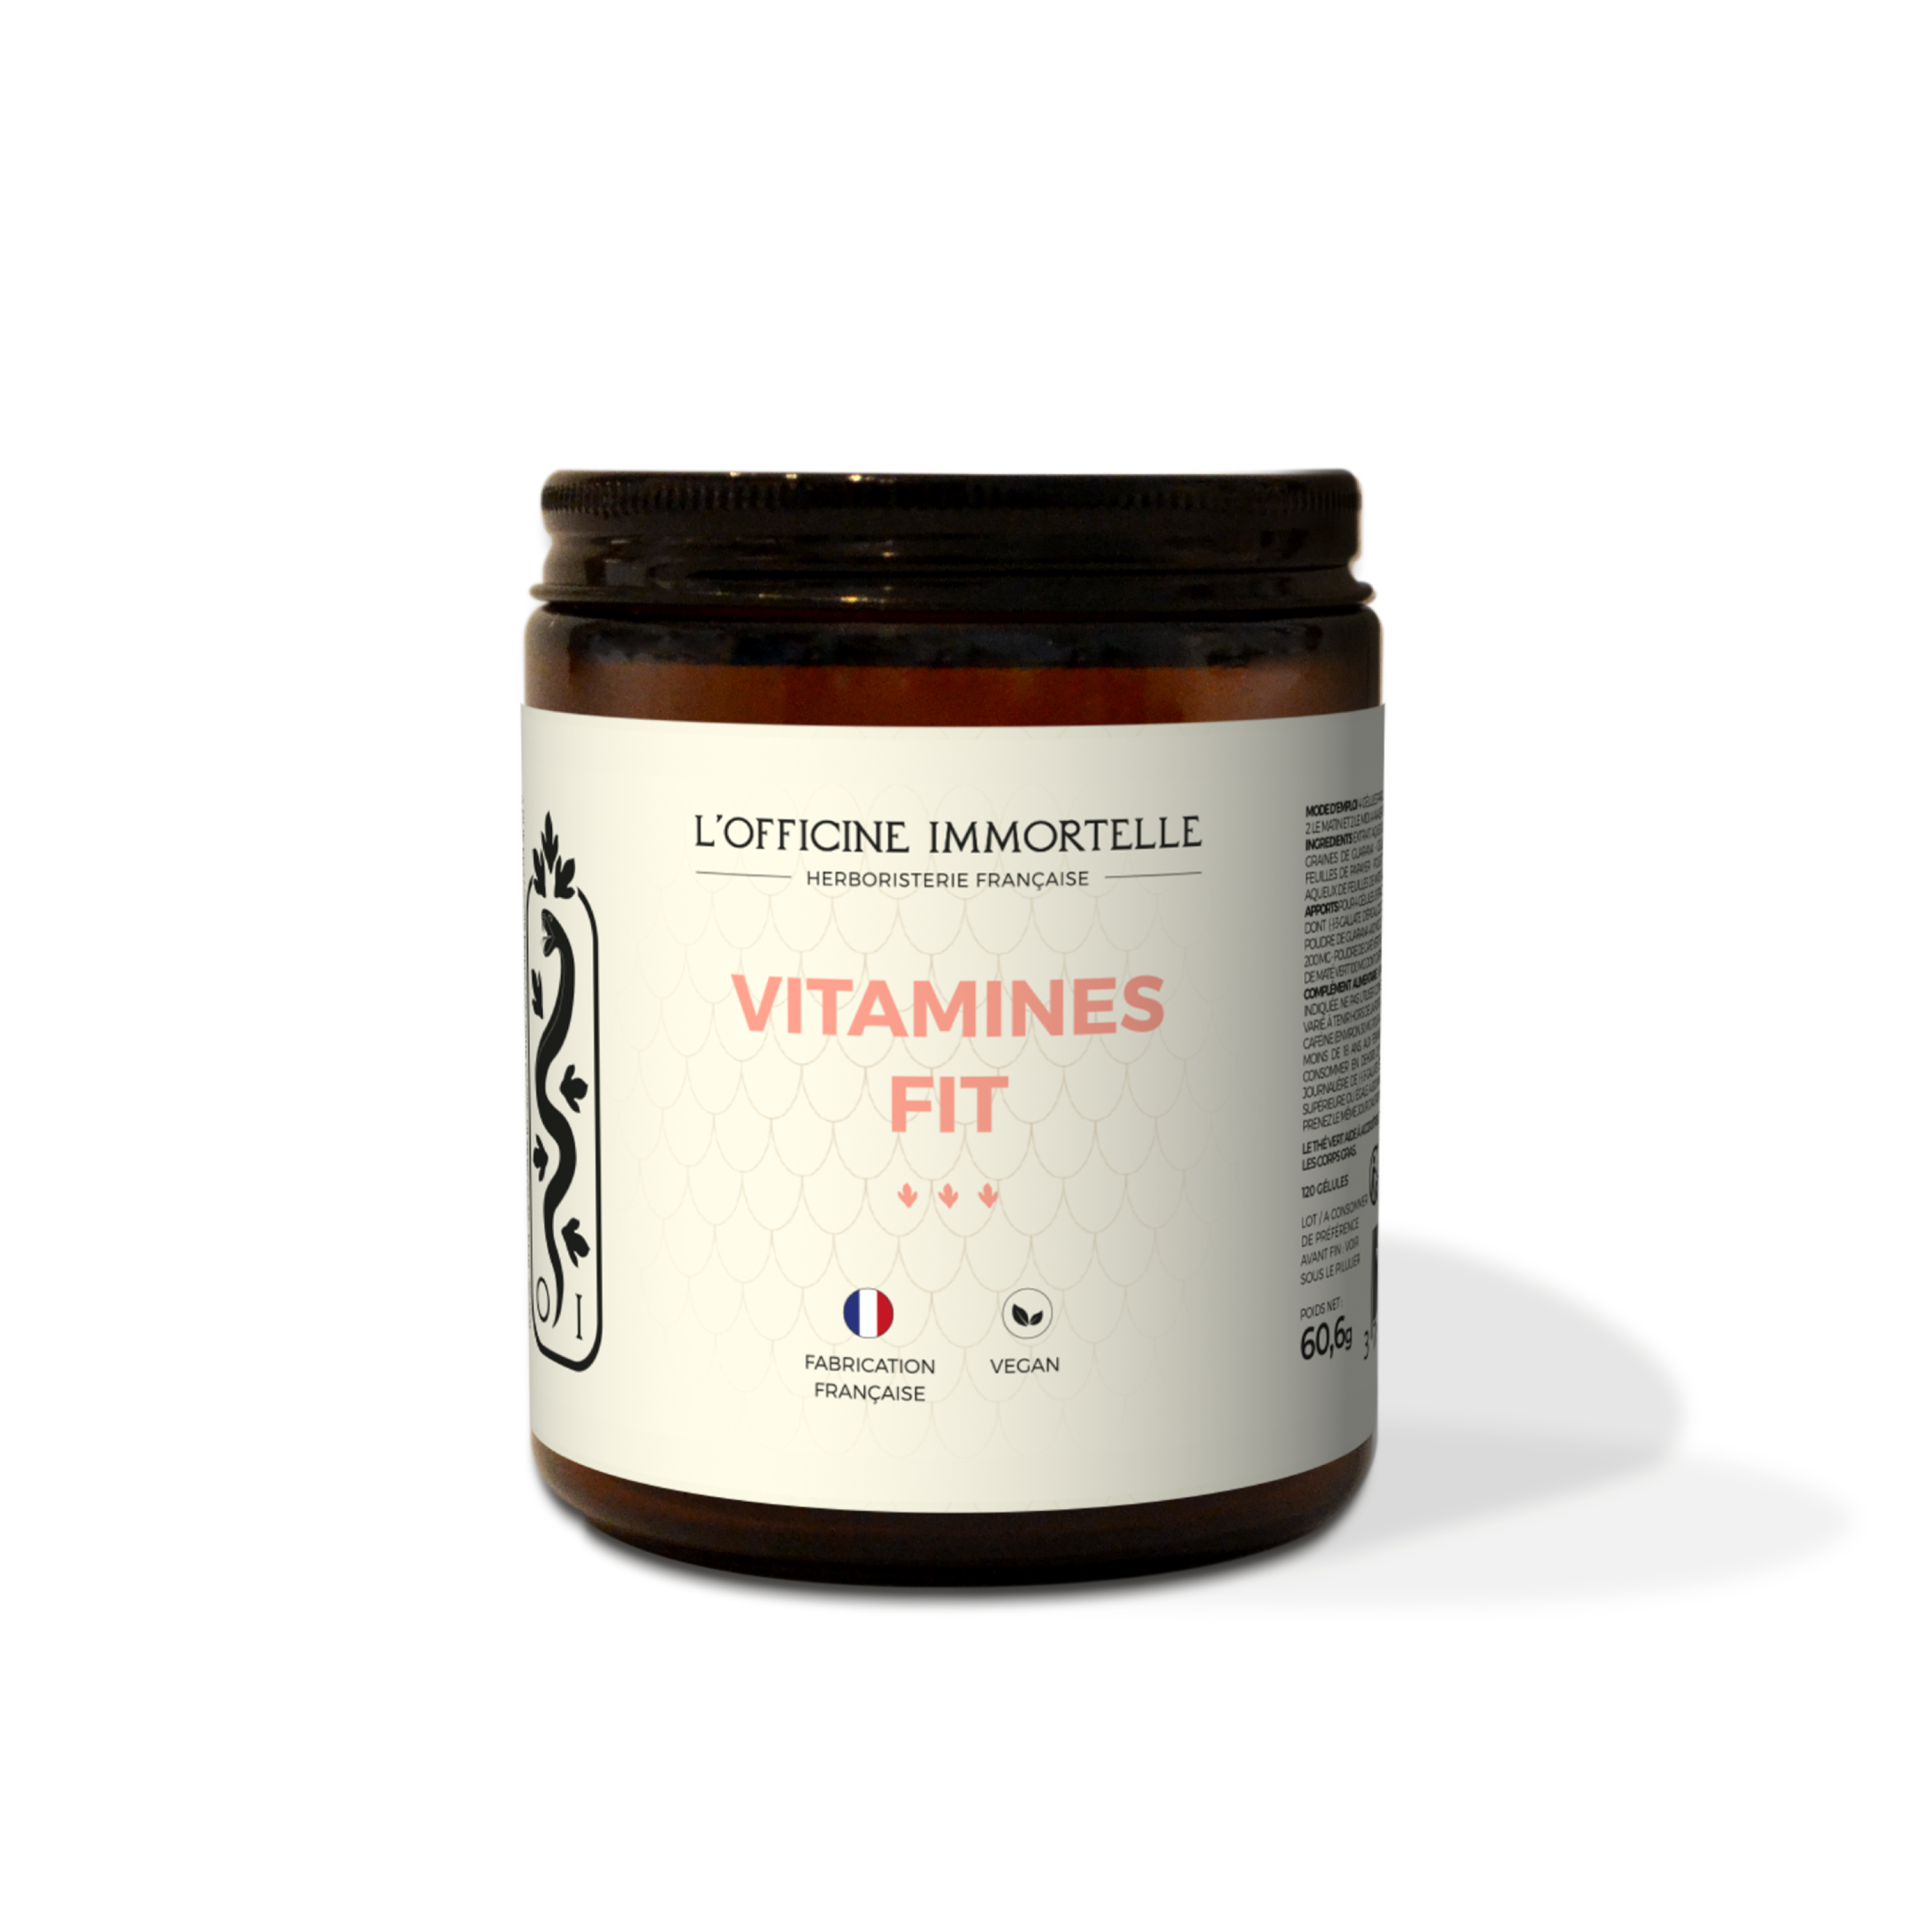 Vitamines Fit - Pour une silhouette affinée